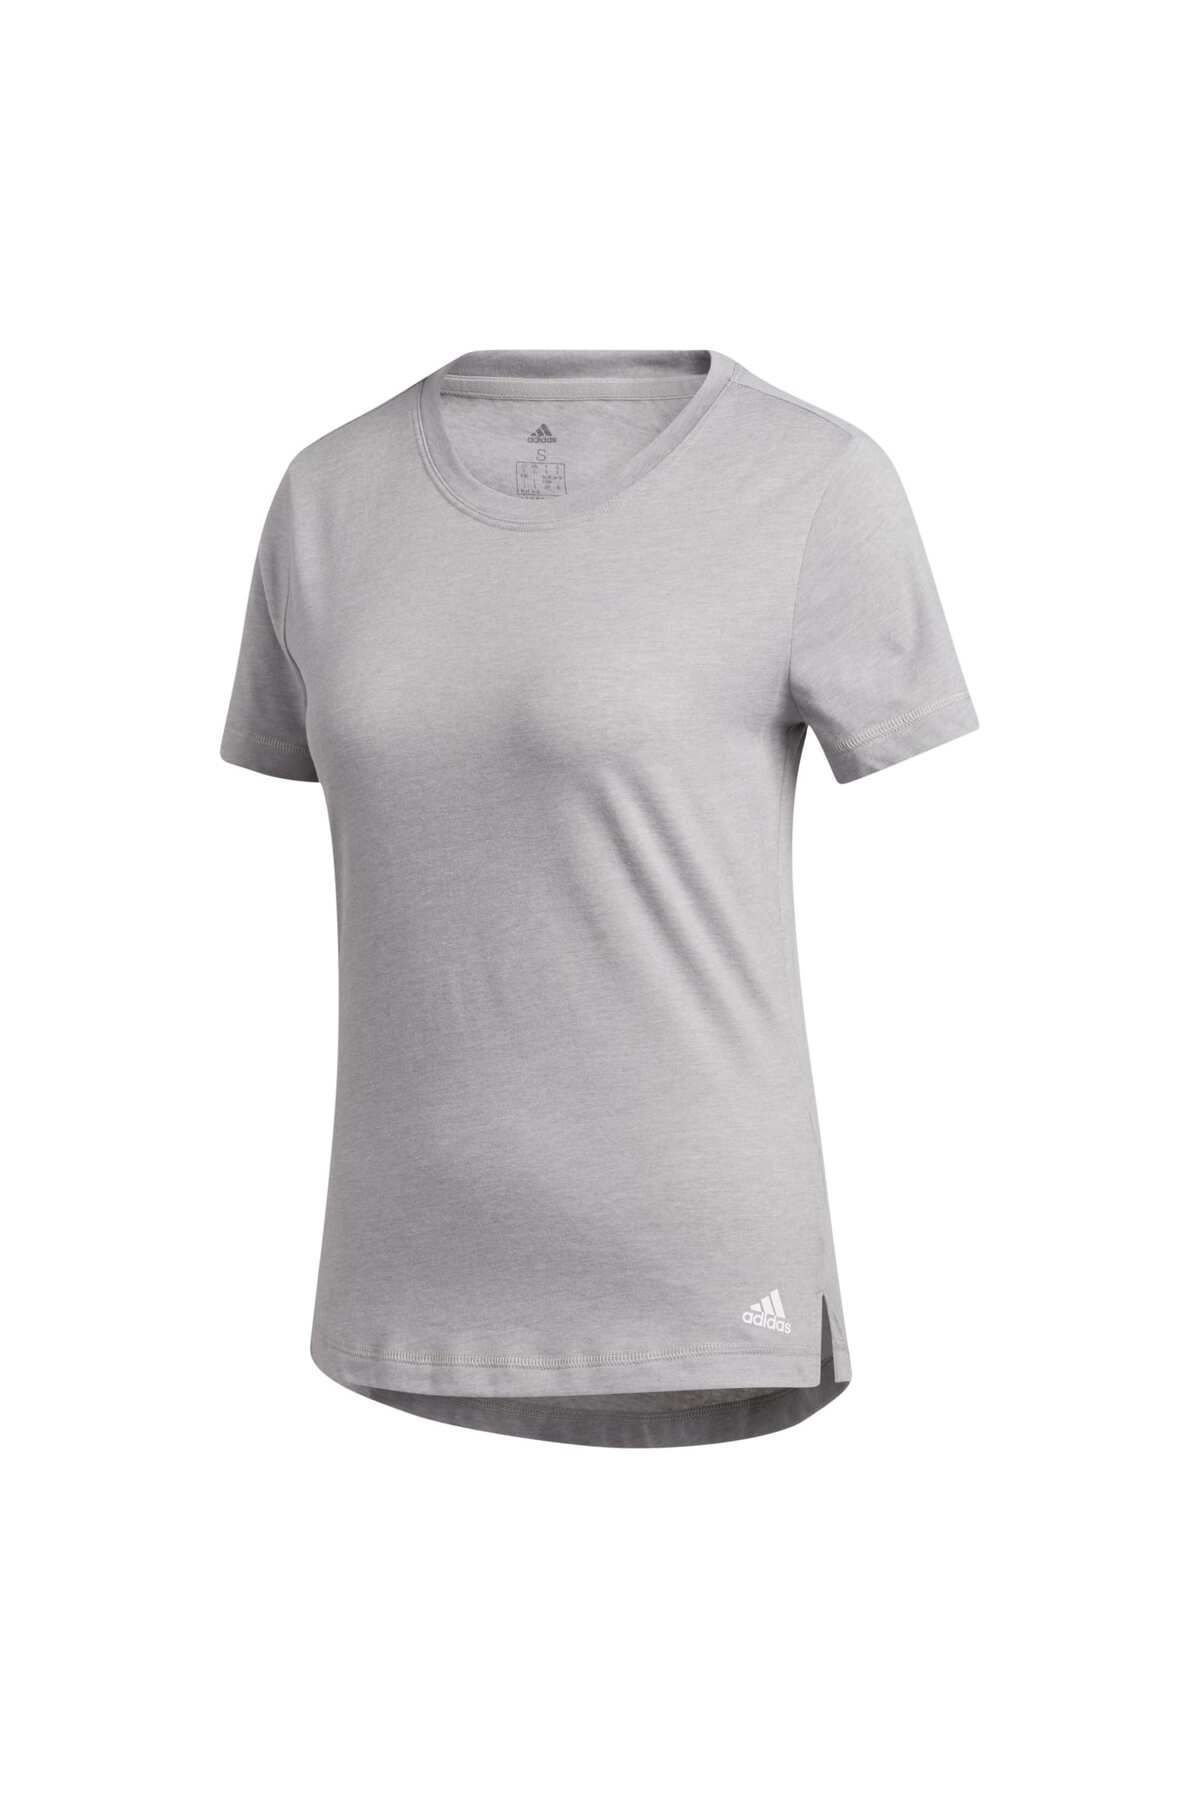 adidas Prime Tee Kadın T-shirt GC7740